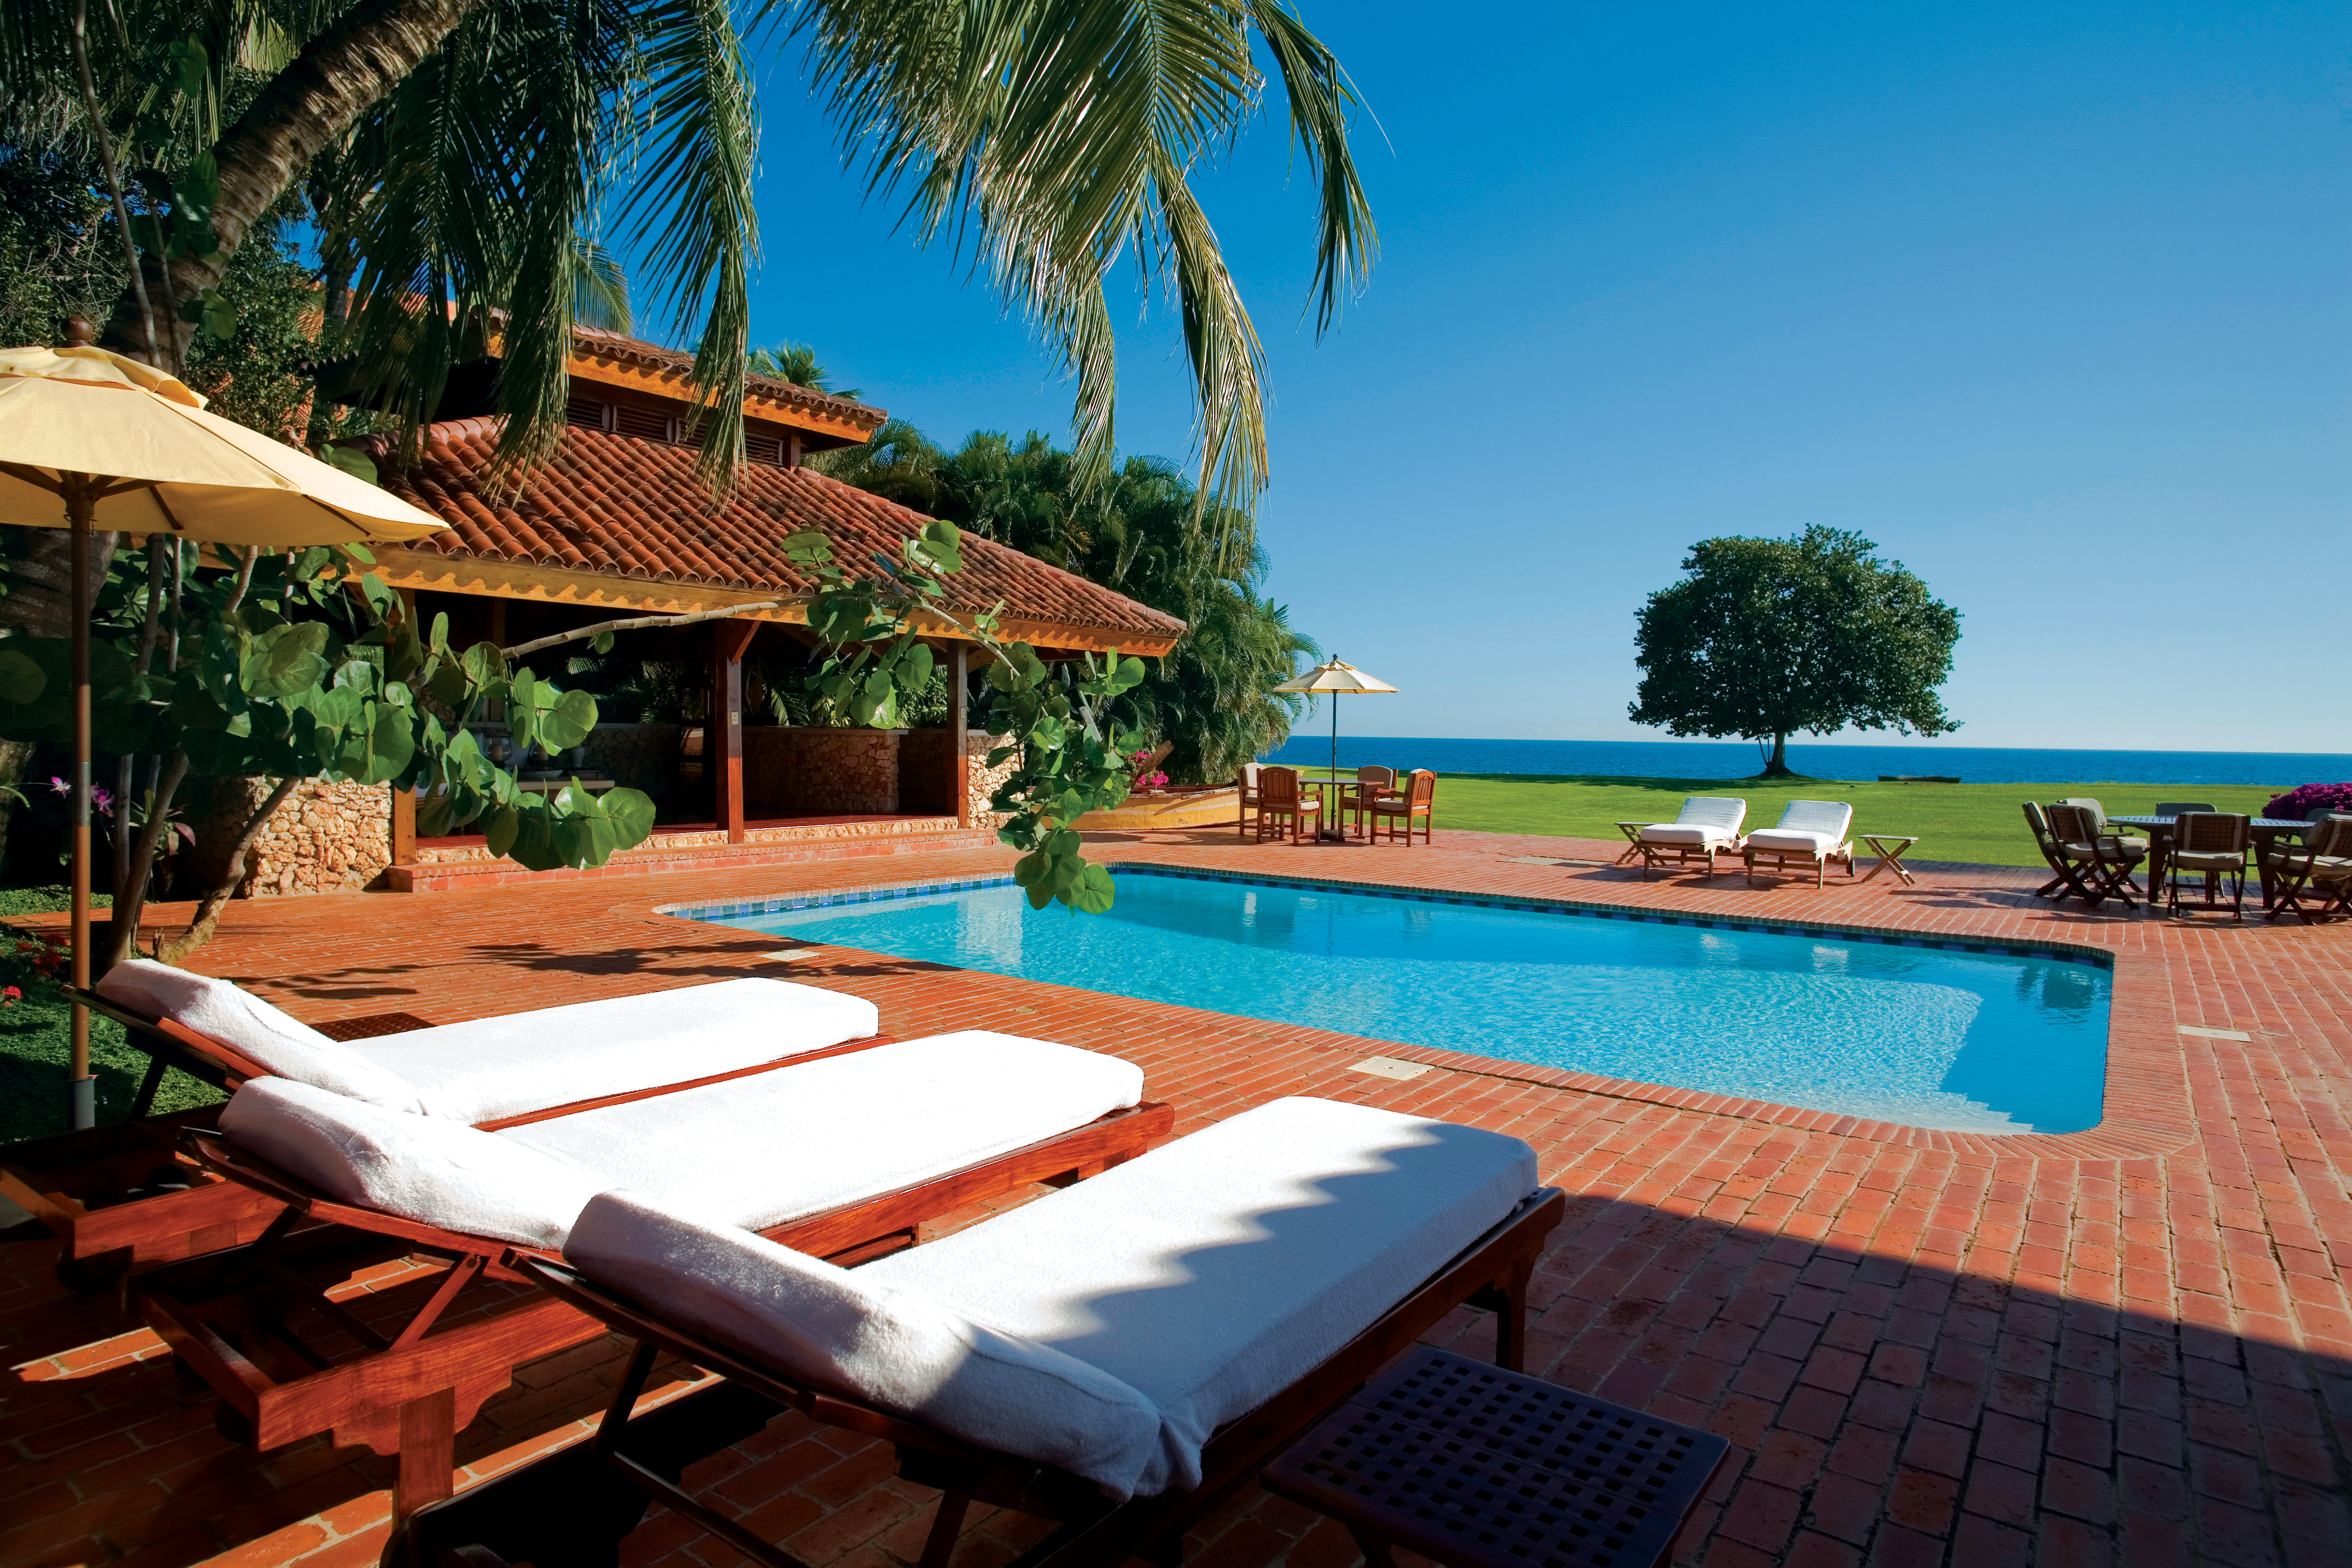 Casa de Campo Luxury Resort | All Inclusive Dominican Republic | Celebrity Kardashian Vacation | Villas